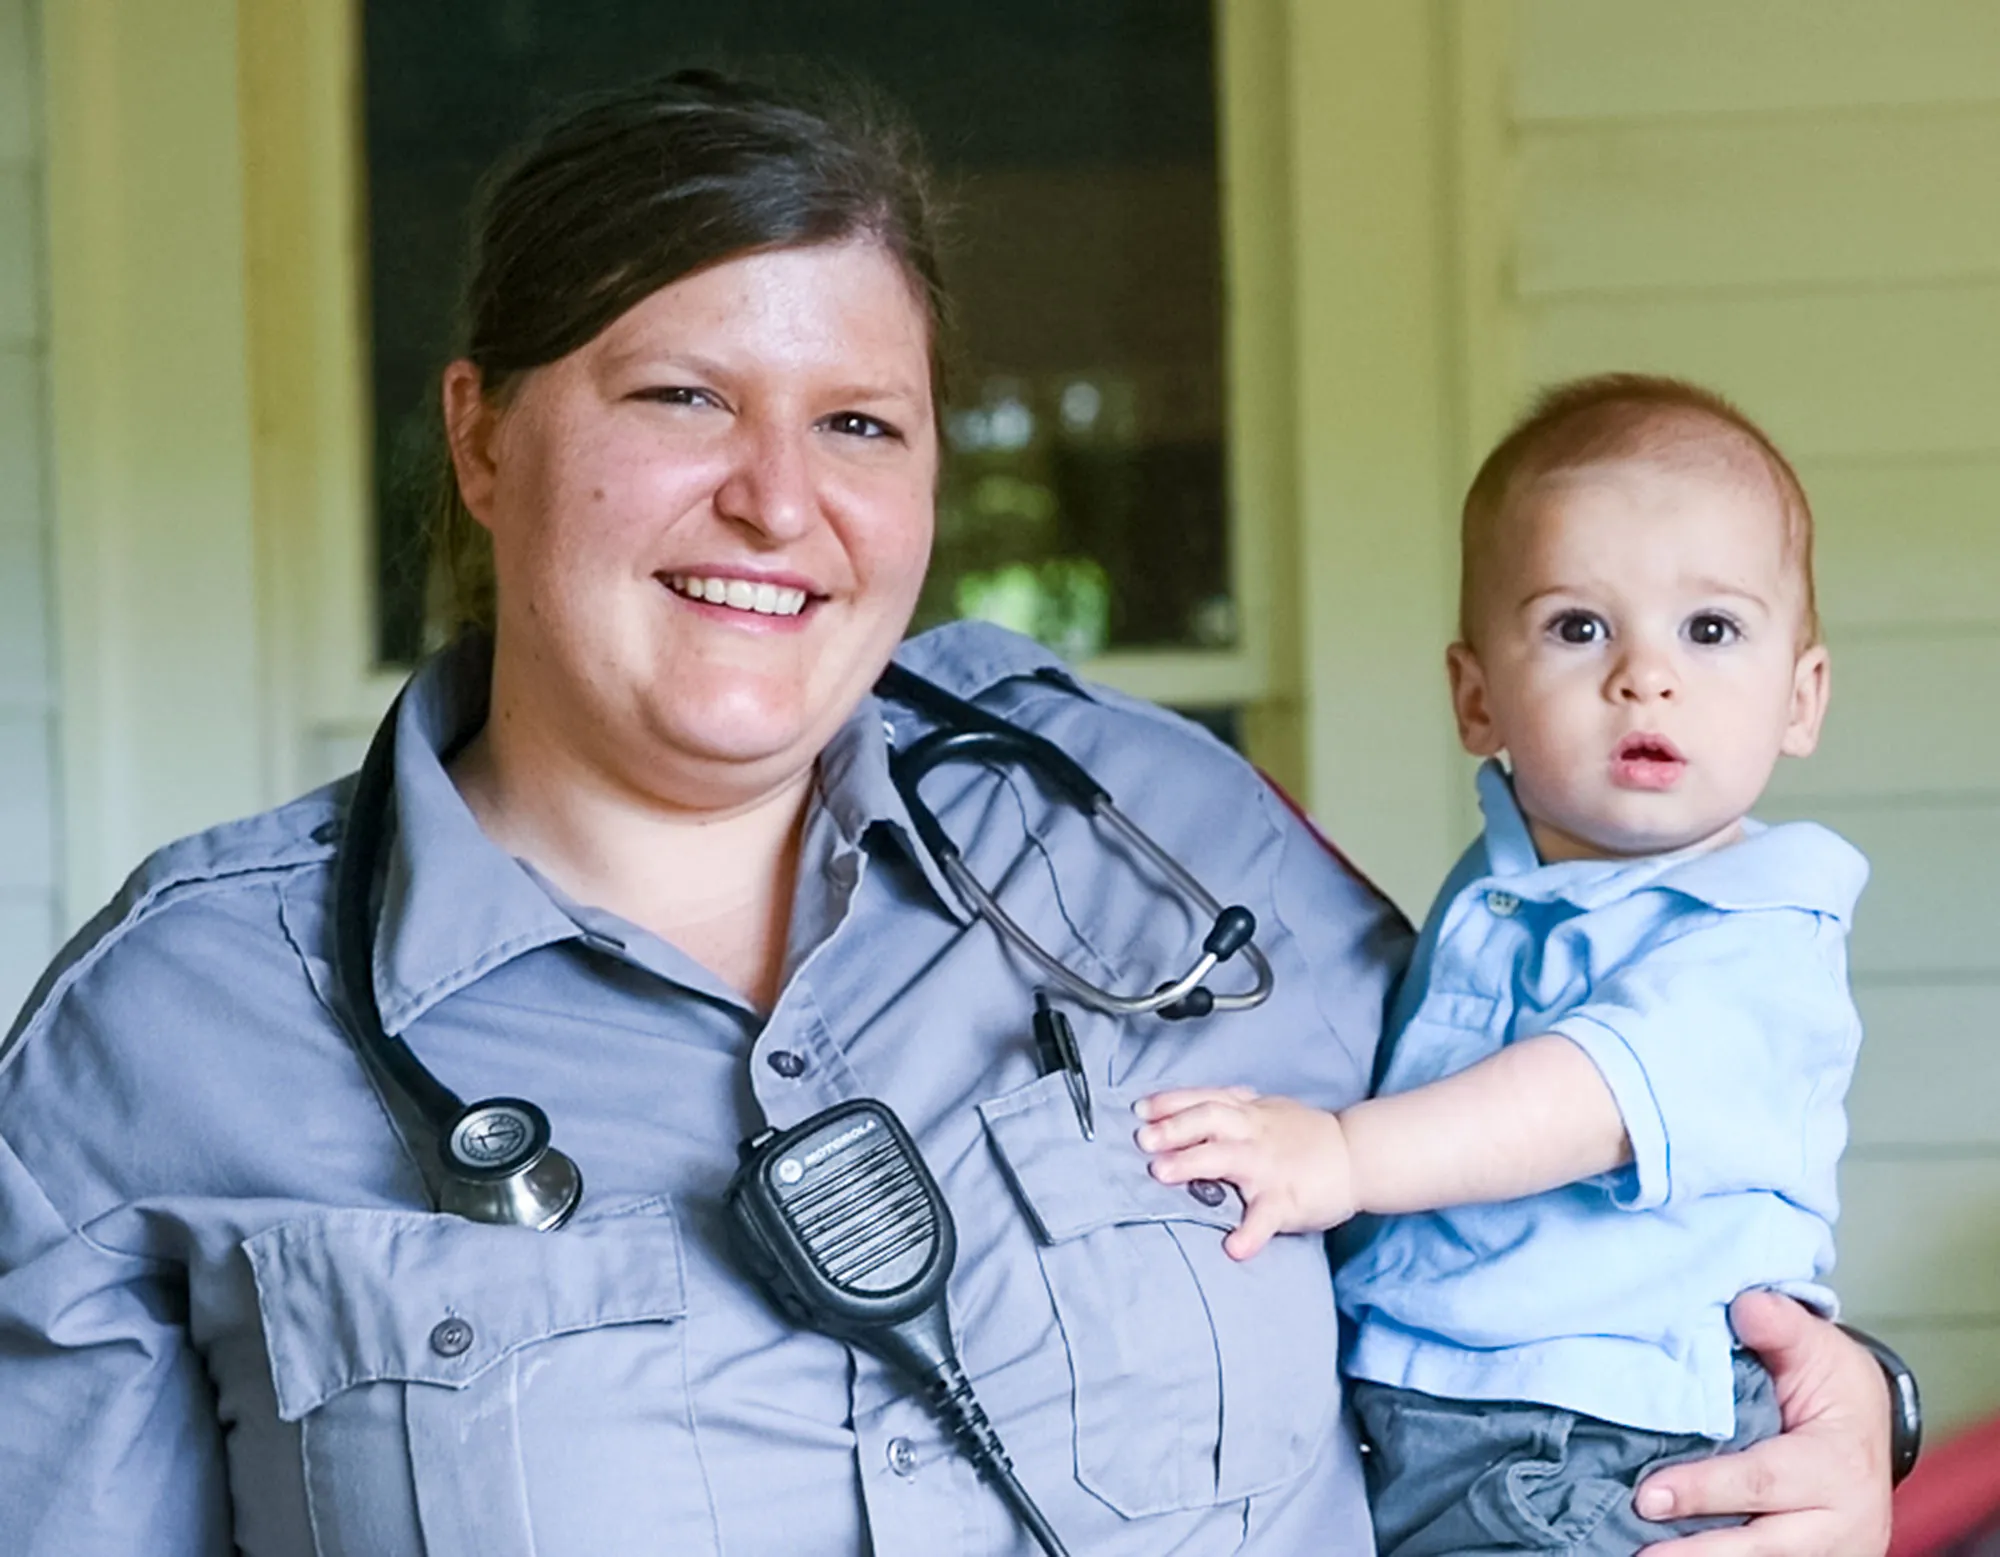 Una trabajadora de la salud de emergencia de la mujer sonríe en uniforme mientras sostiene a su niño pequeño.